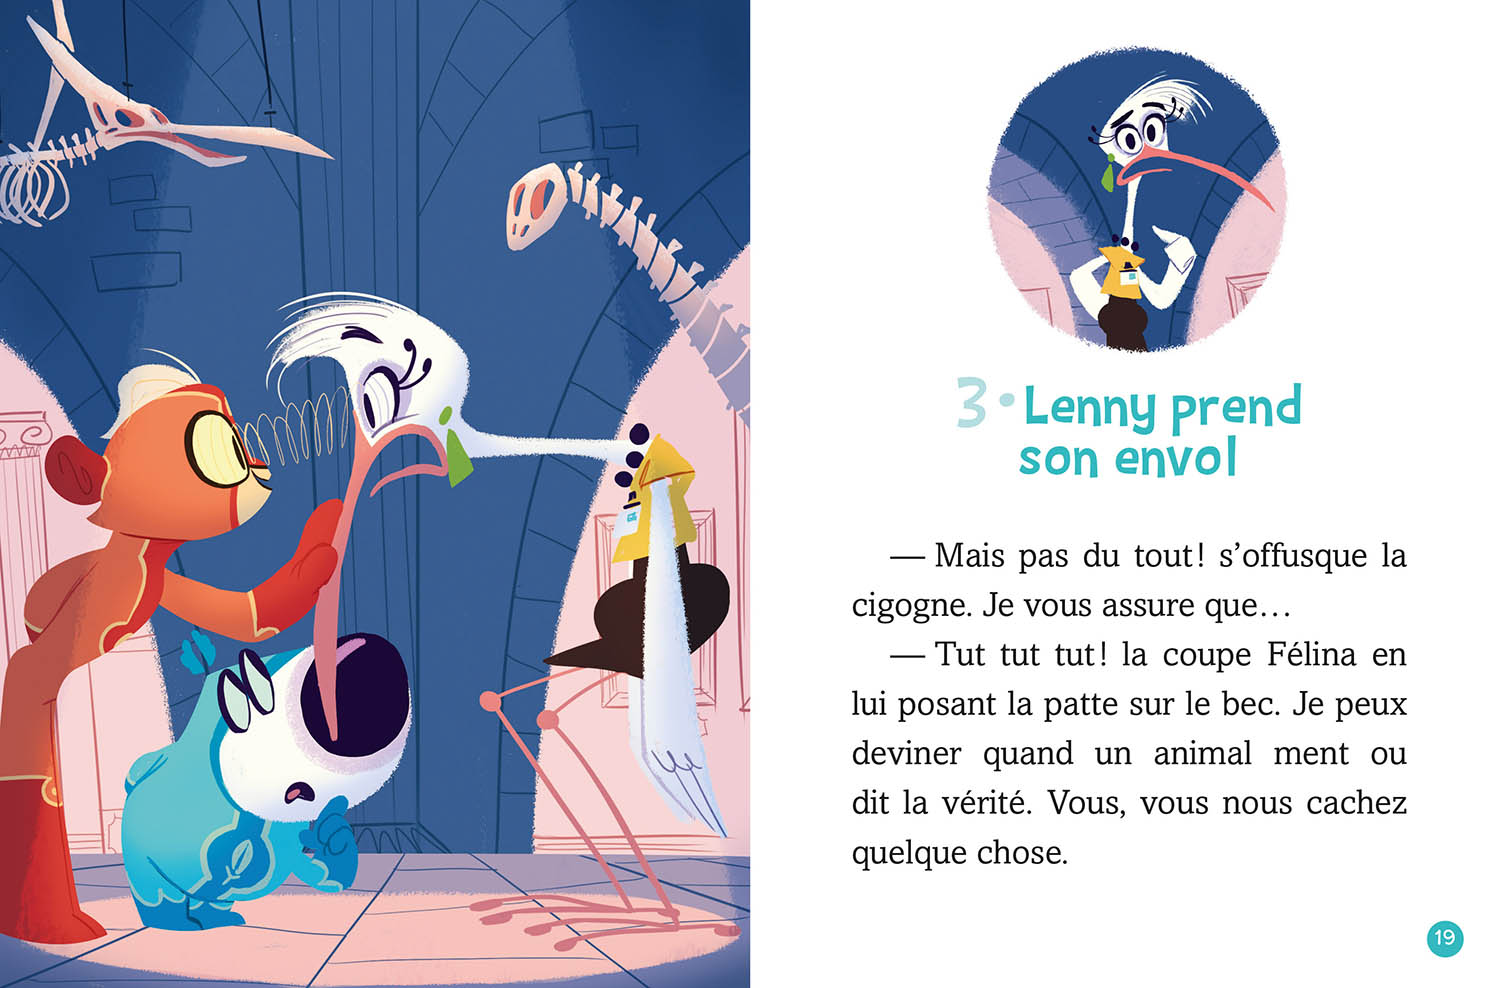 La Fantastique Ligue Des Animaux Mégacools : Mission Dodo